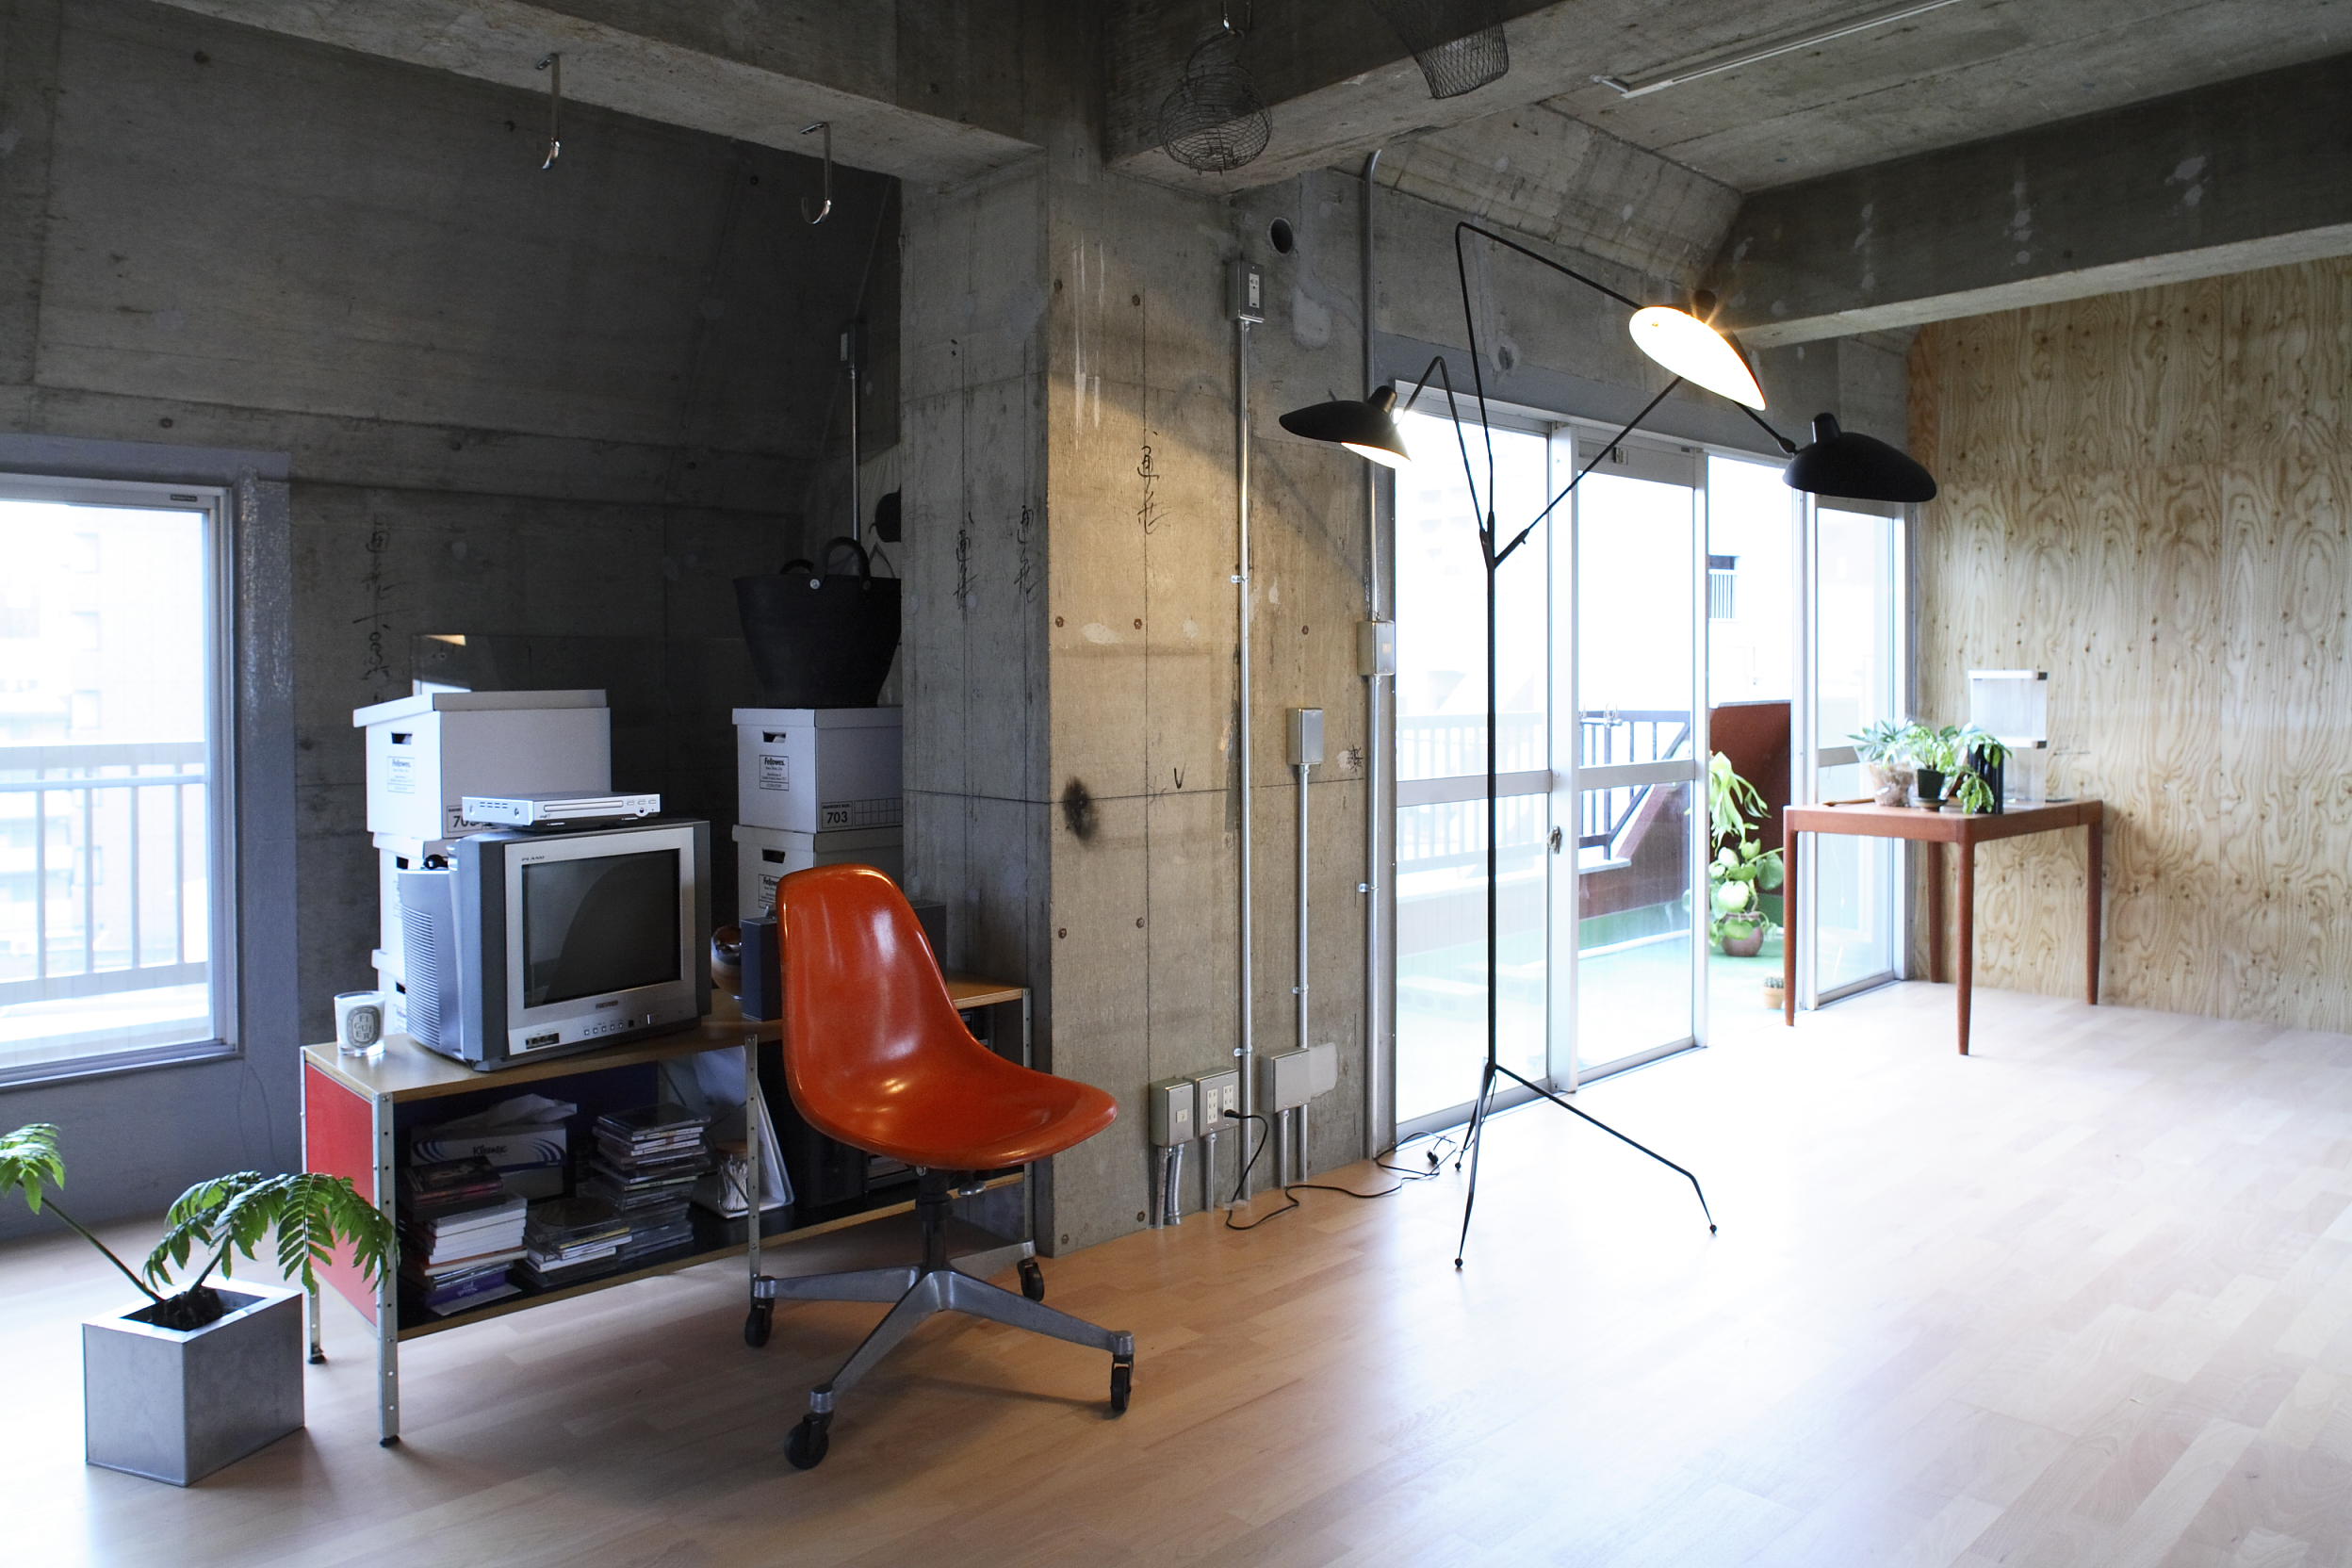 コンクリート壁と共生する部屋 部位 部屋別事例一覧 リノベーション東京 理想の部屋